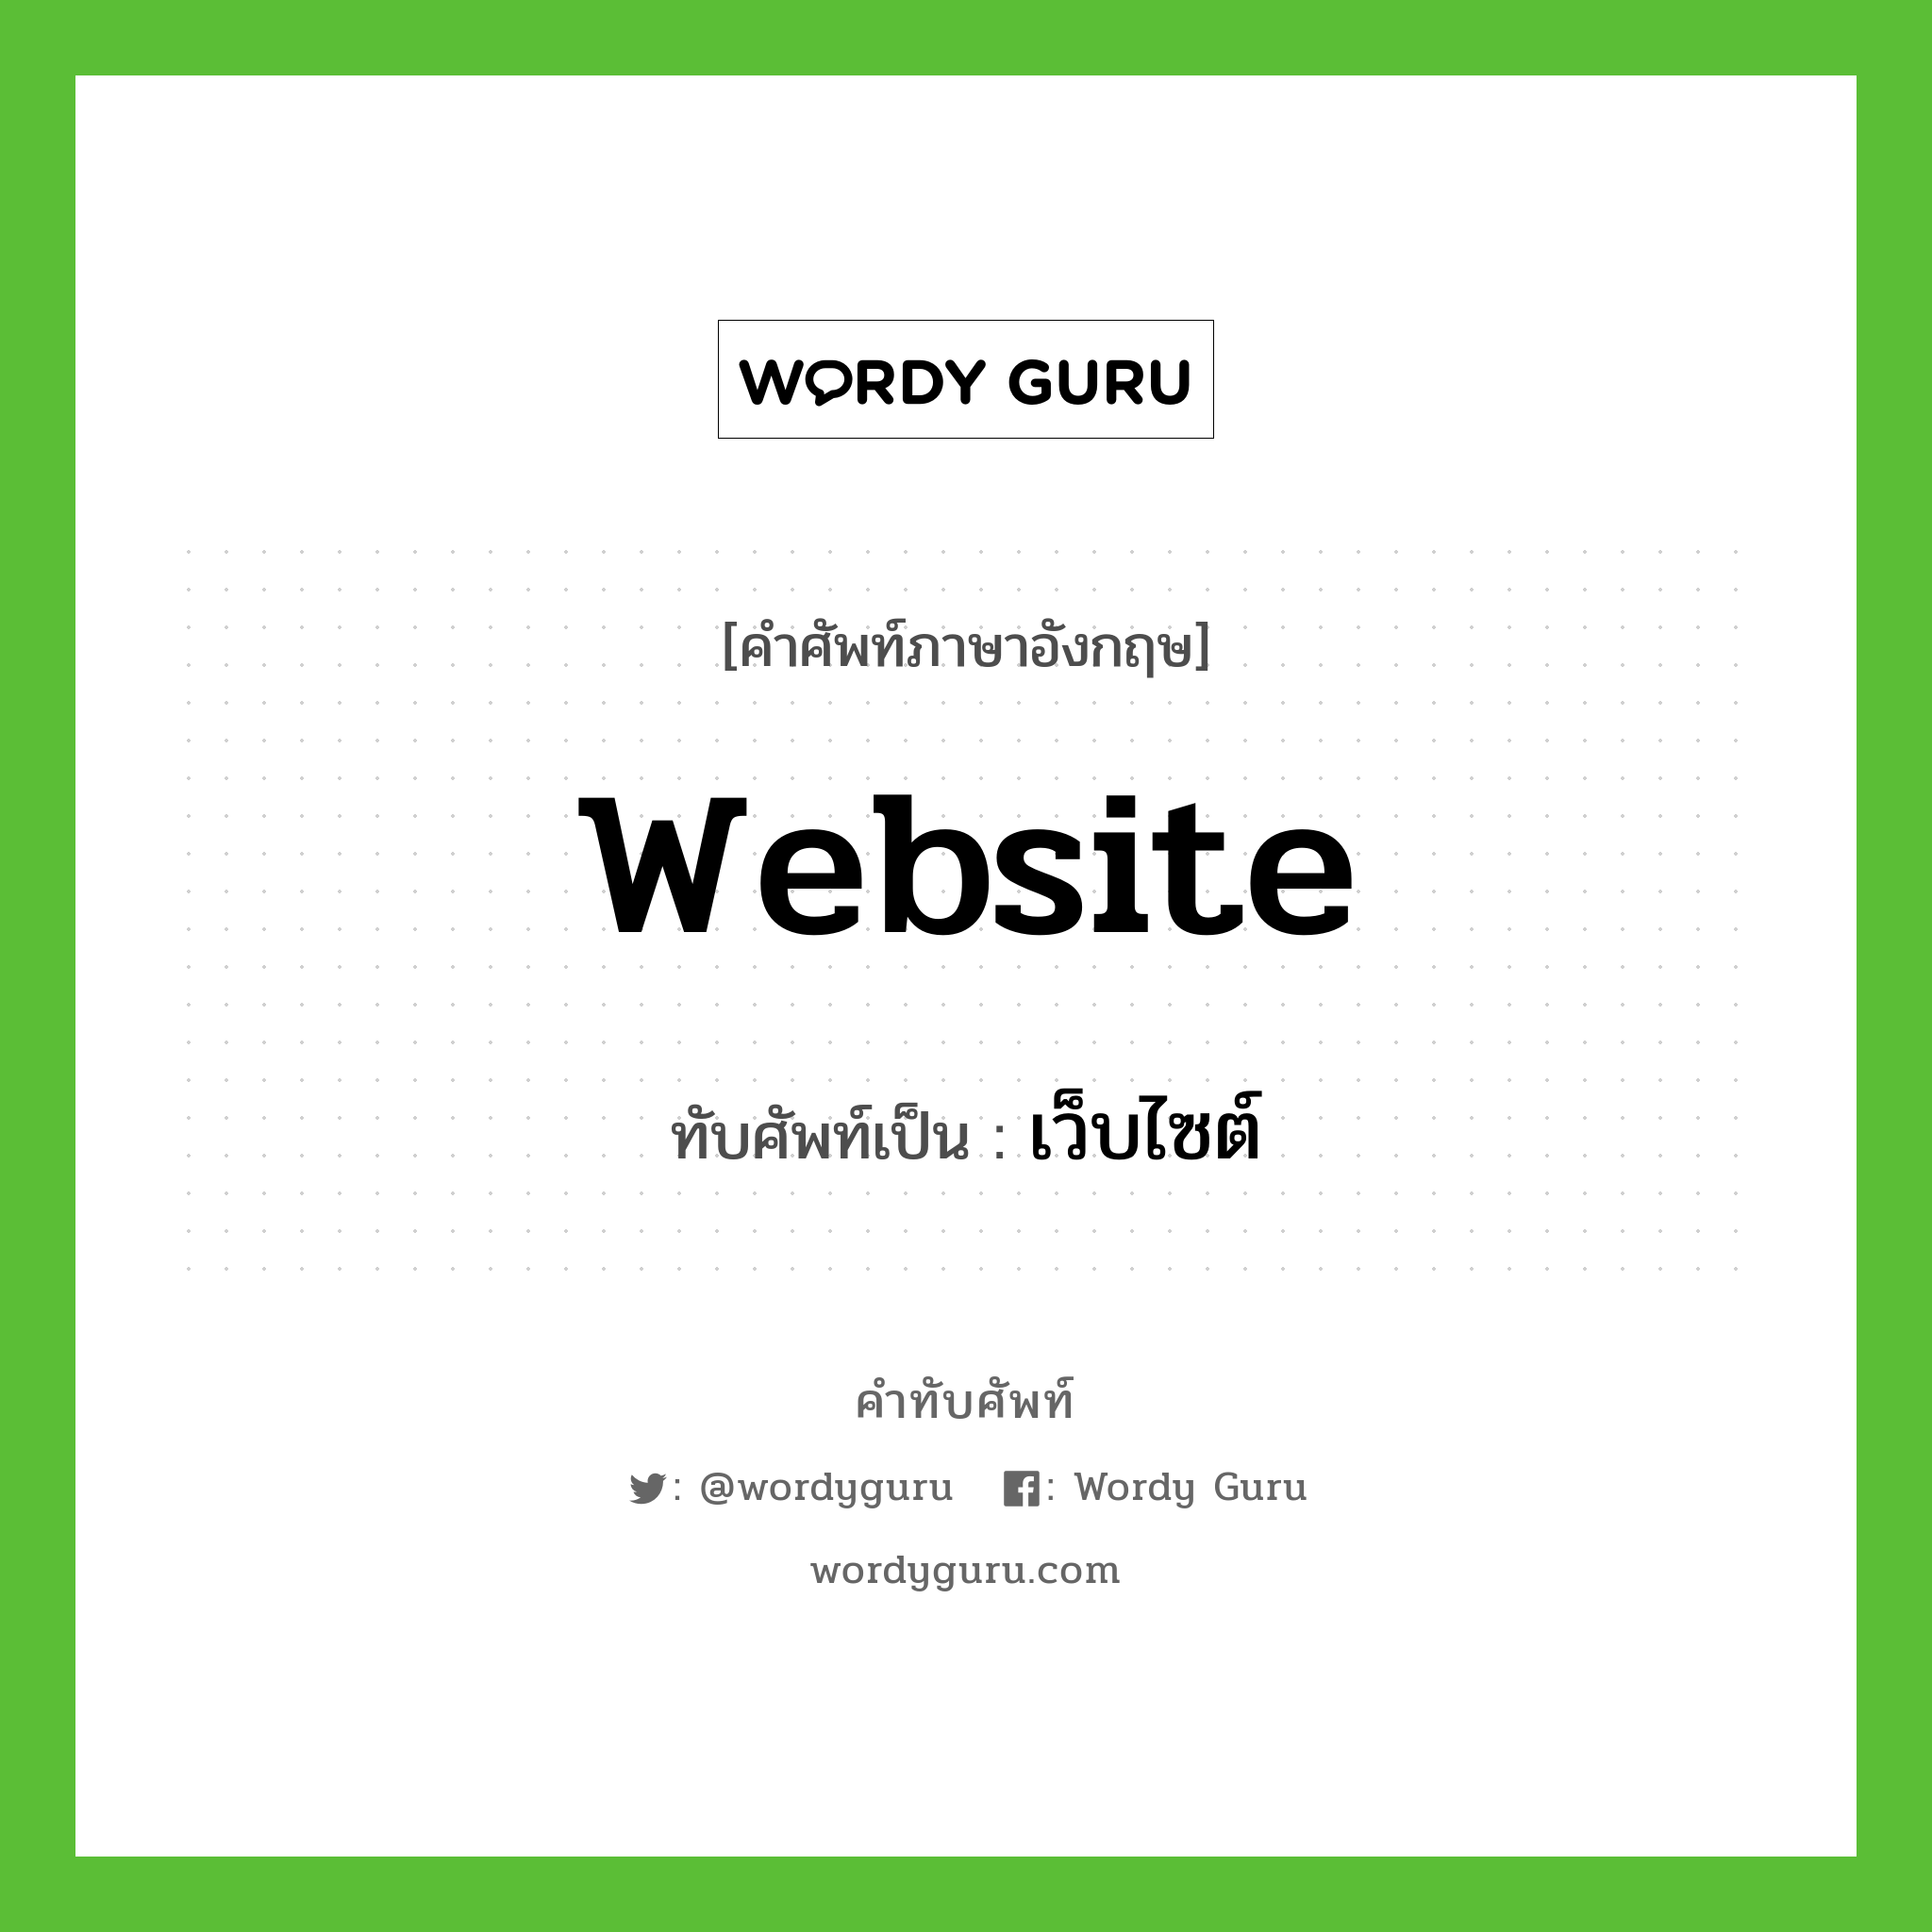 website เขียนเป็นคำไทยว่าอะไร?, คำศัพท์ภาษาอังกฤษ website ทับศัพท์เป็น เว็บไซต์